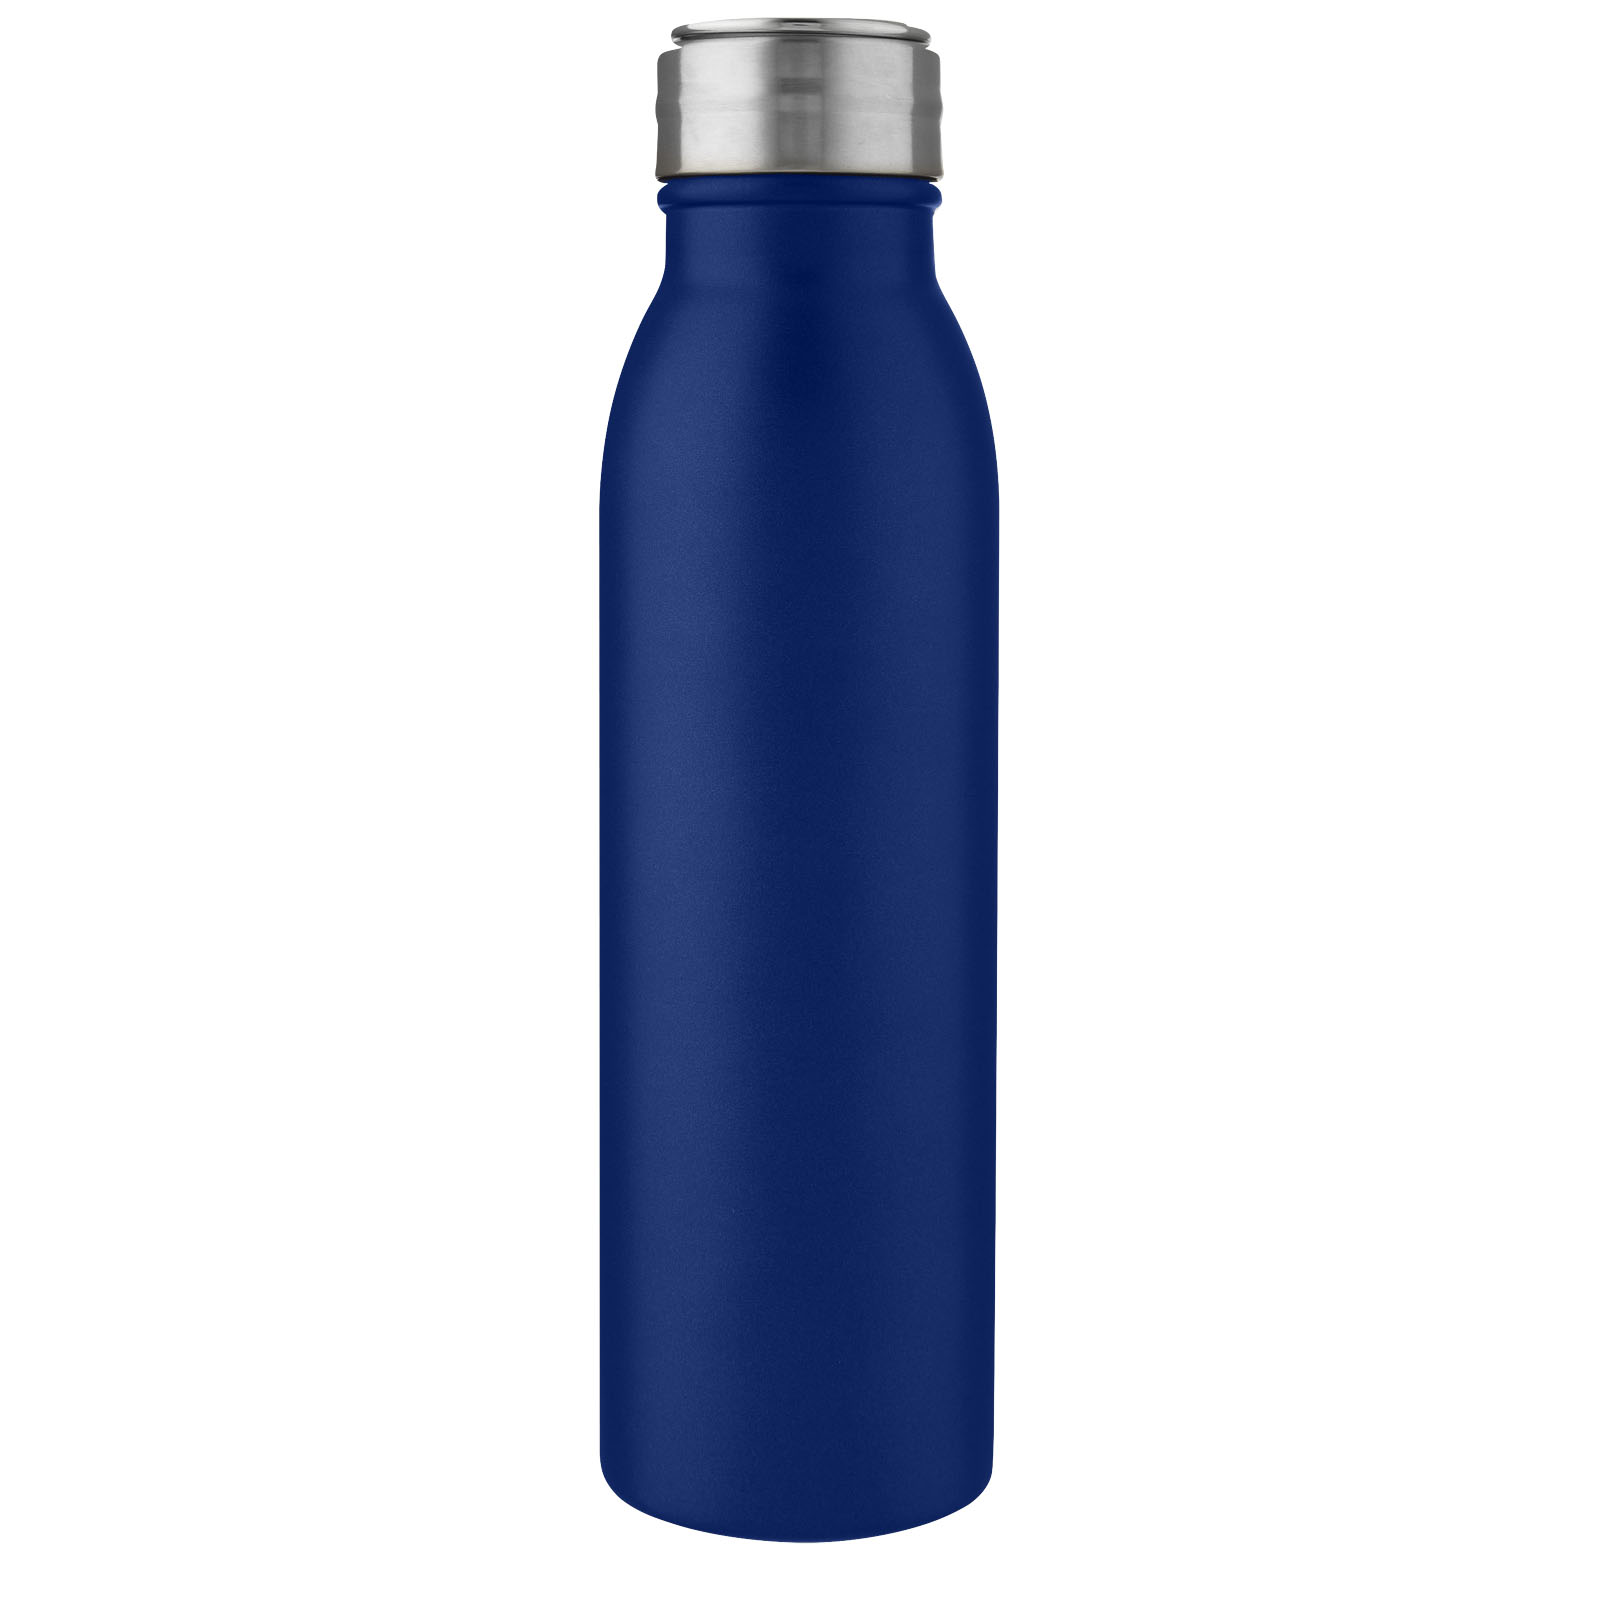 Advertising Water bottles - Harper 700 ml stainless steel water bottle with metal loop - 1